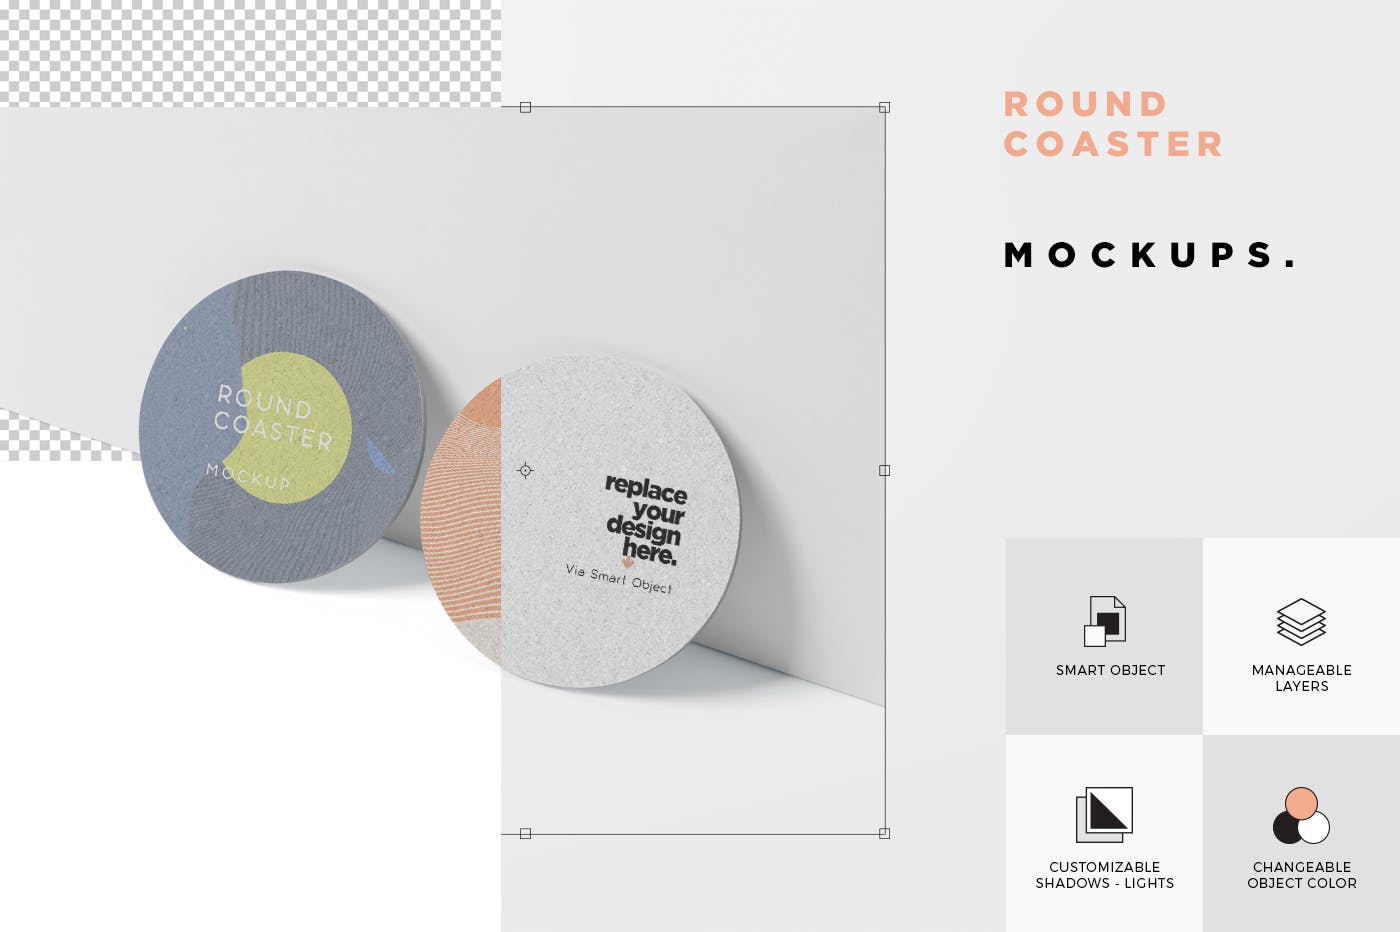 圆形杯垫图案设计效果图蚂蚁素材精选 Round Coaster Mock-Up – Medium Size插图(5)